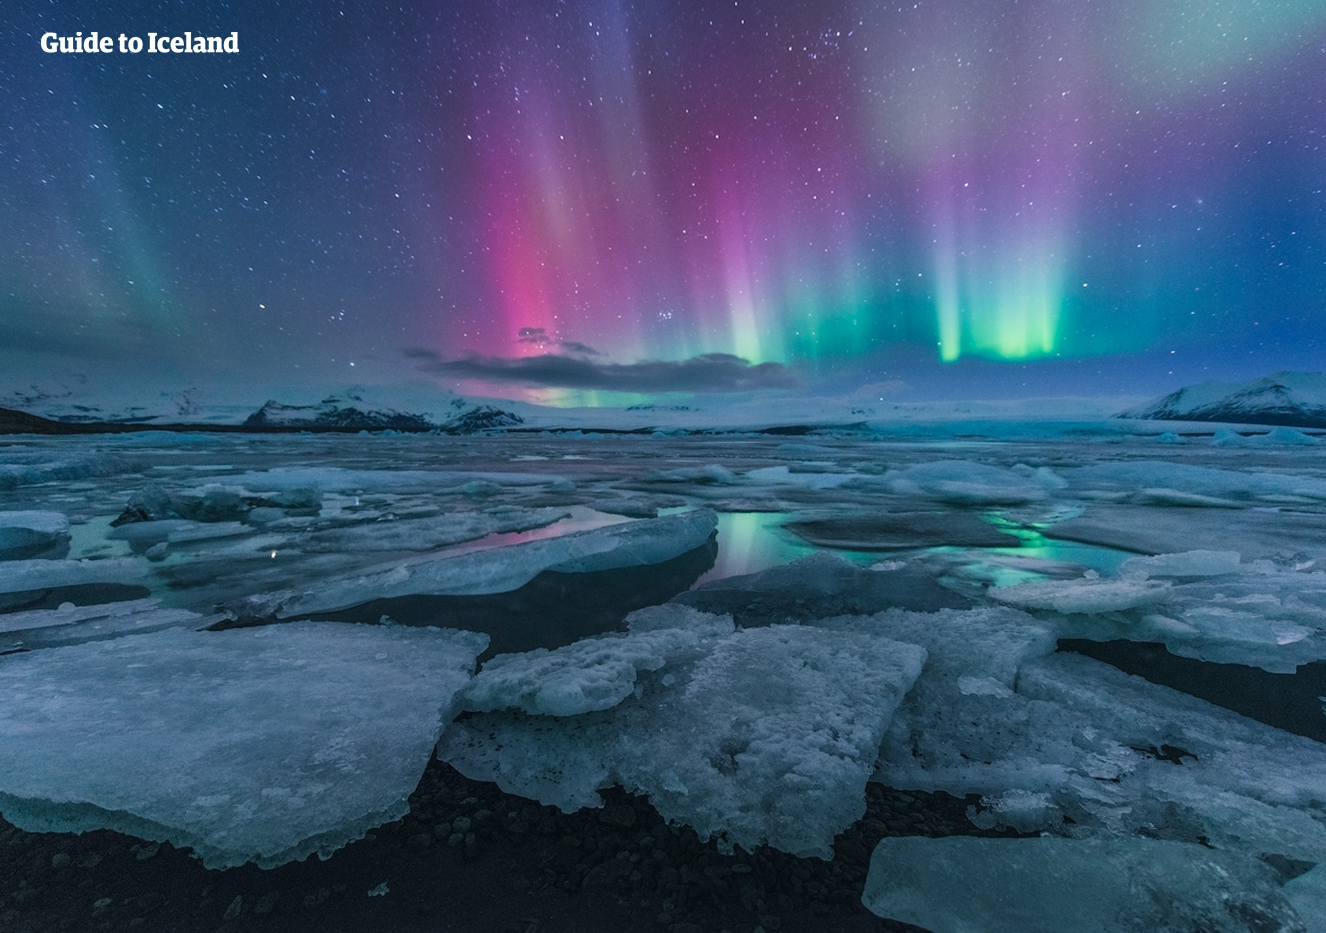 Peut-être verrez-vous les aurores boréales danser sur le lagon glaciaire de Jökulsárlón lors de cette tournée hivernale.